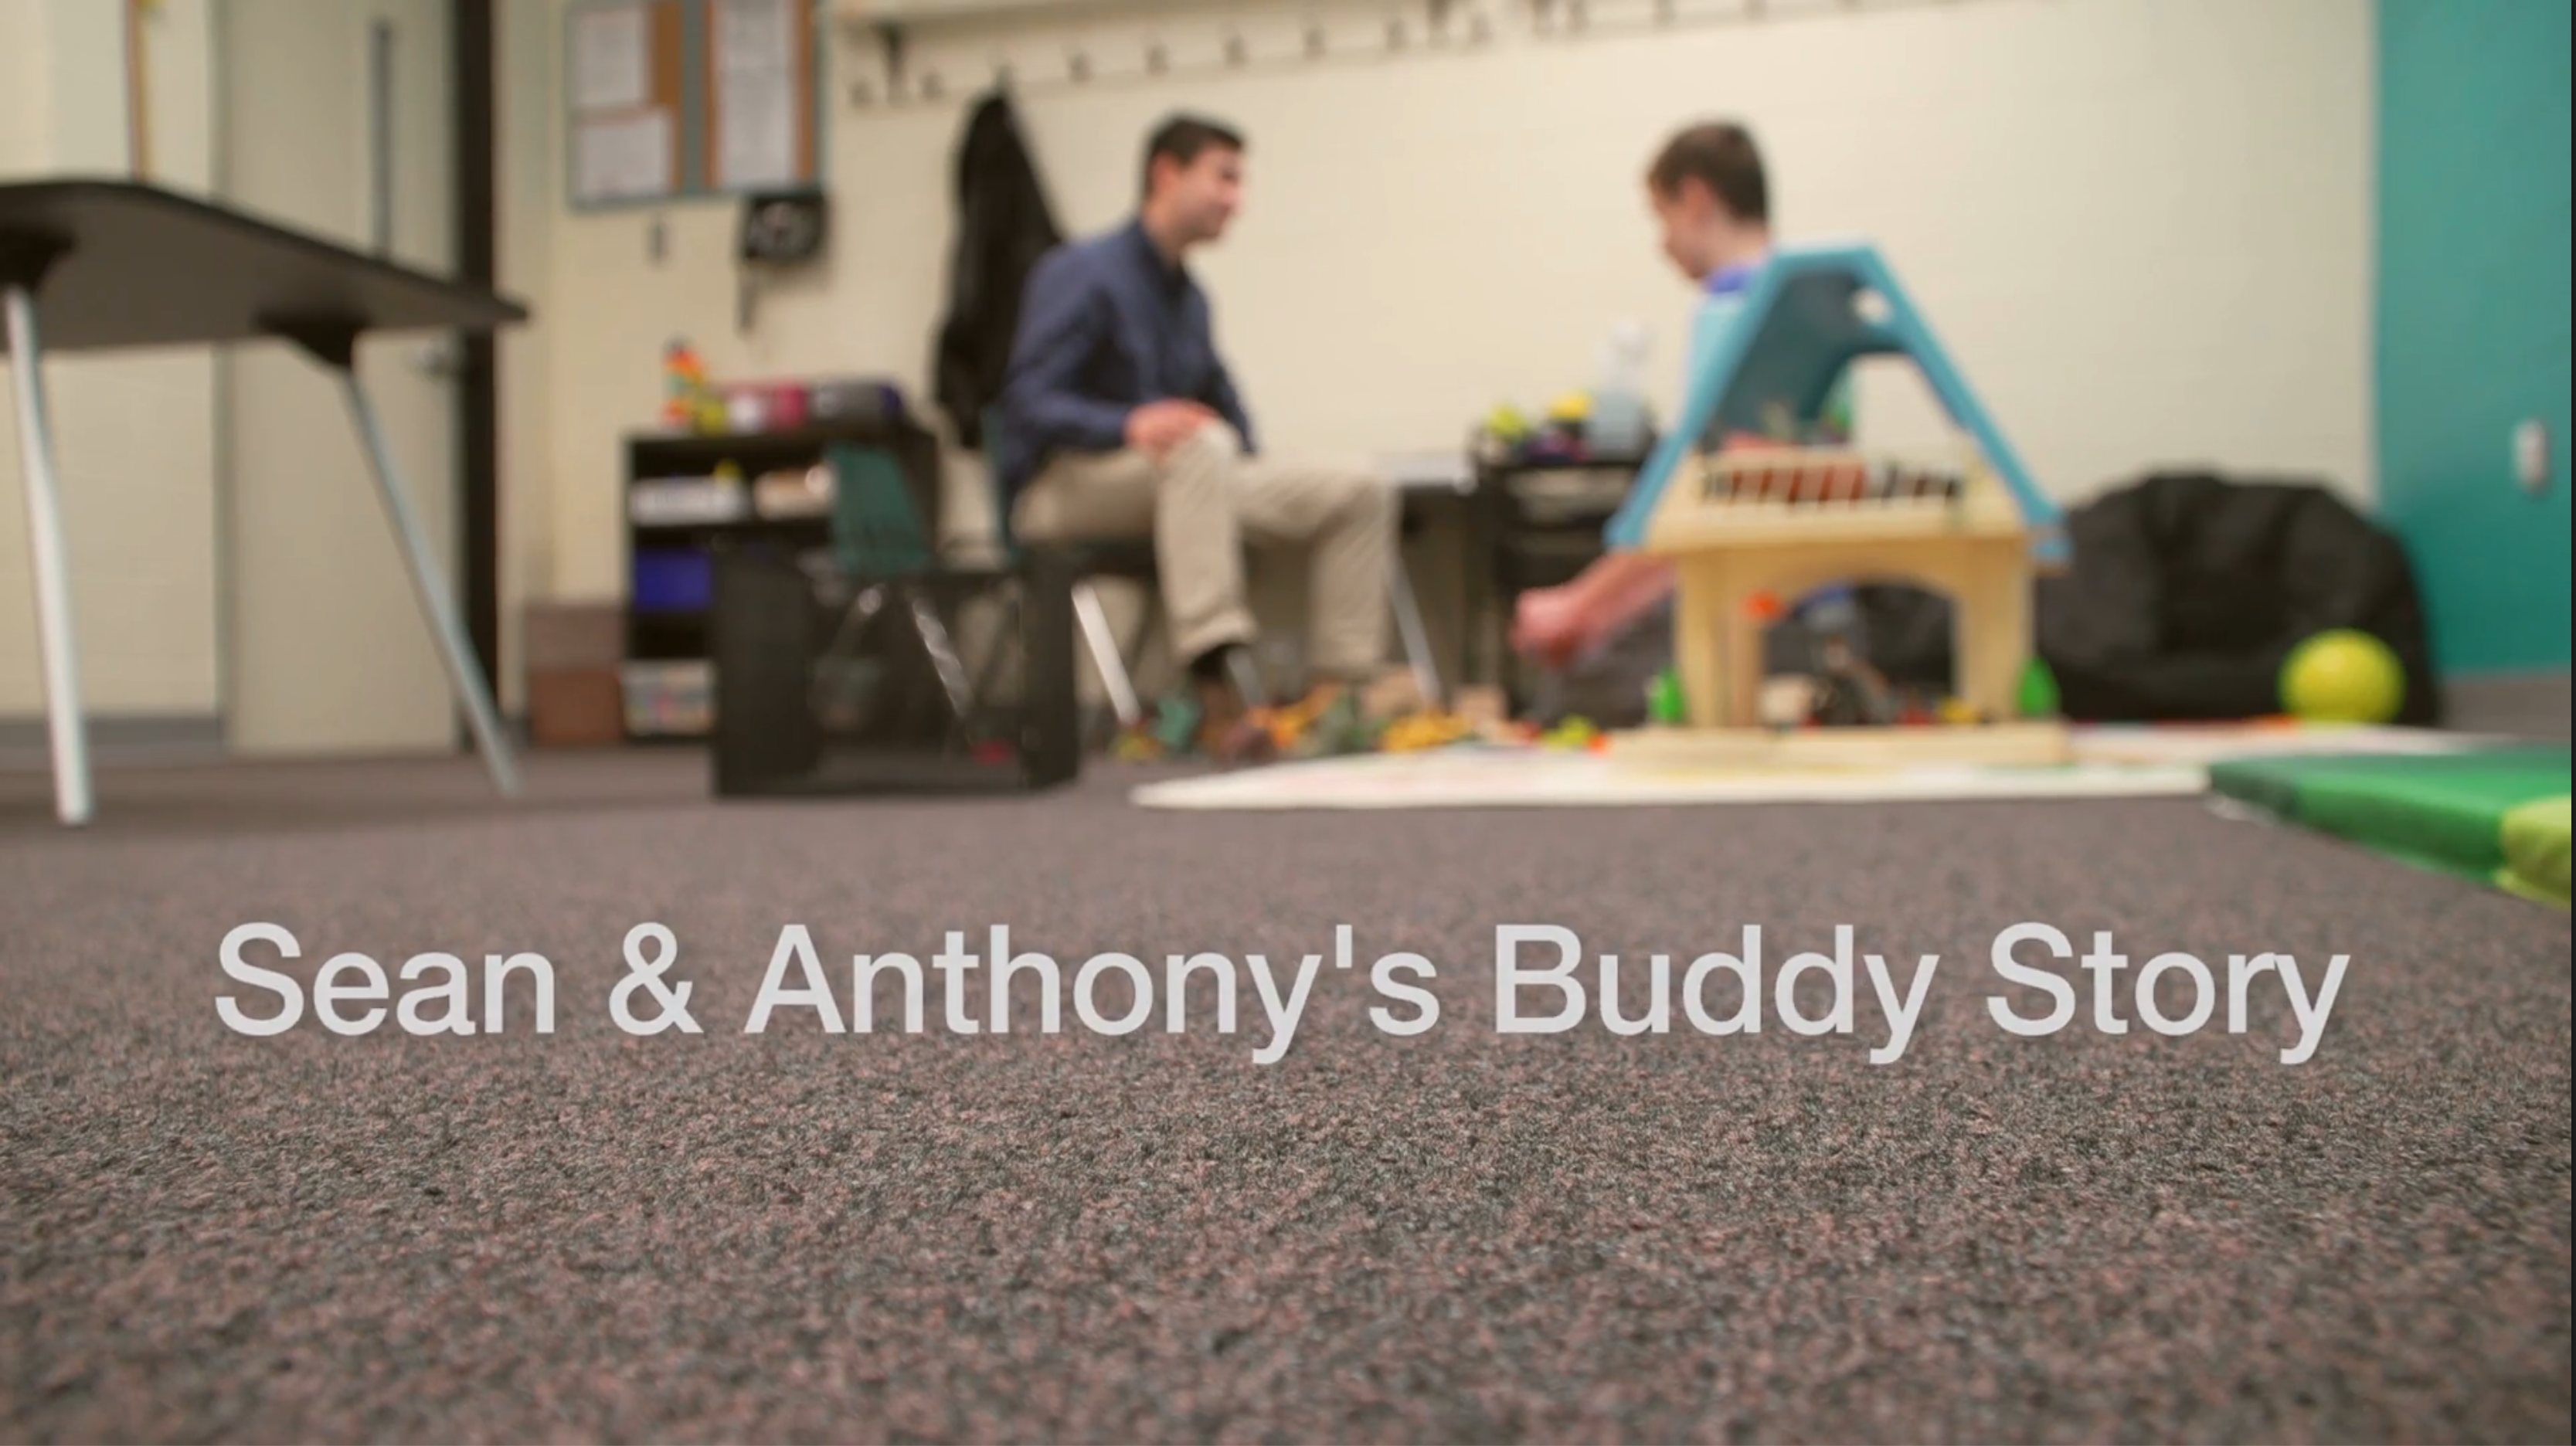 Sean & Anthony's Buddy Story